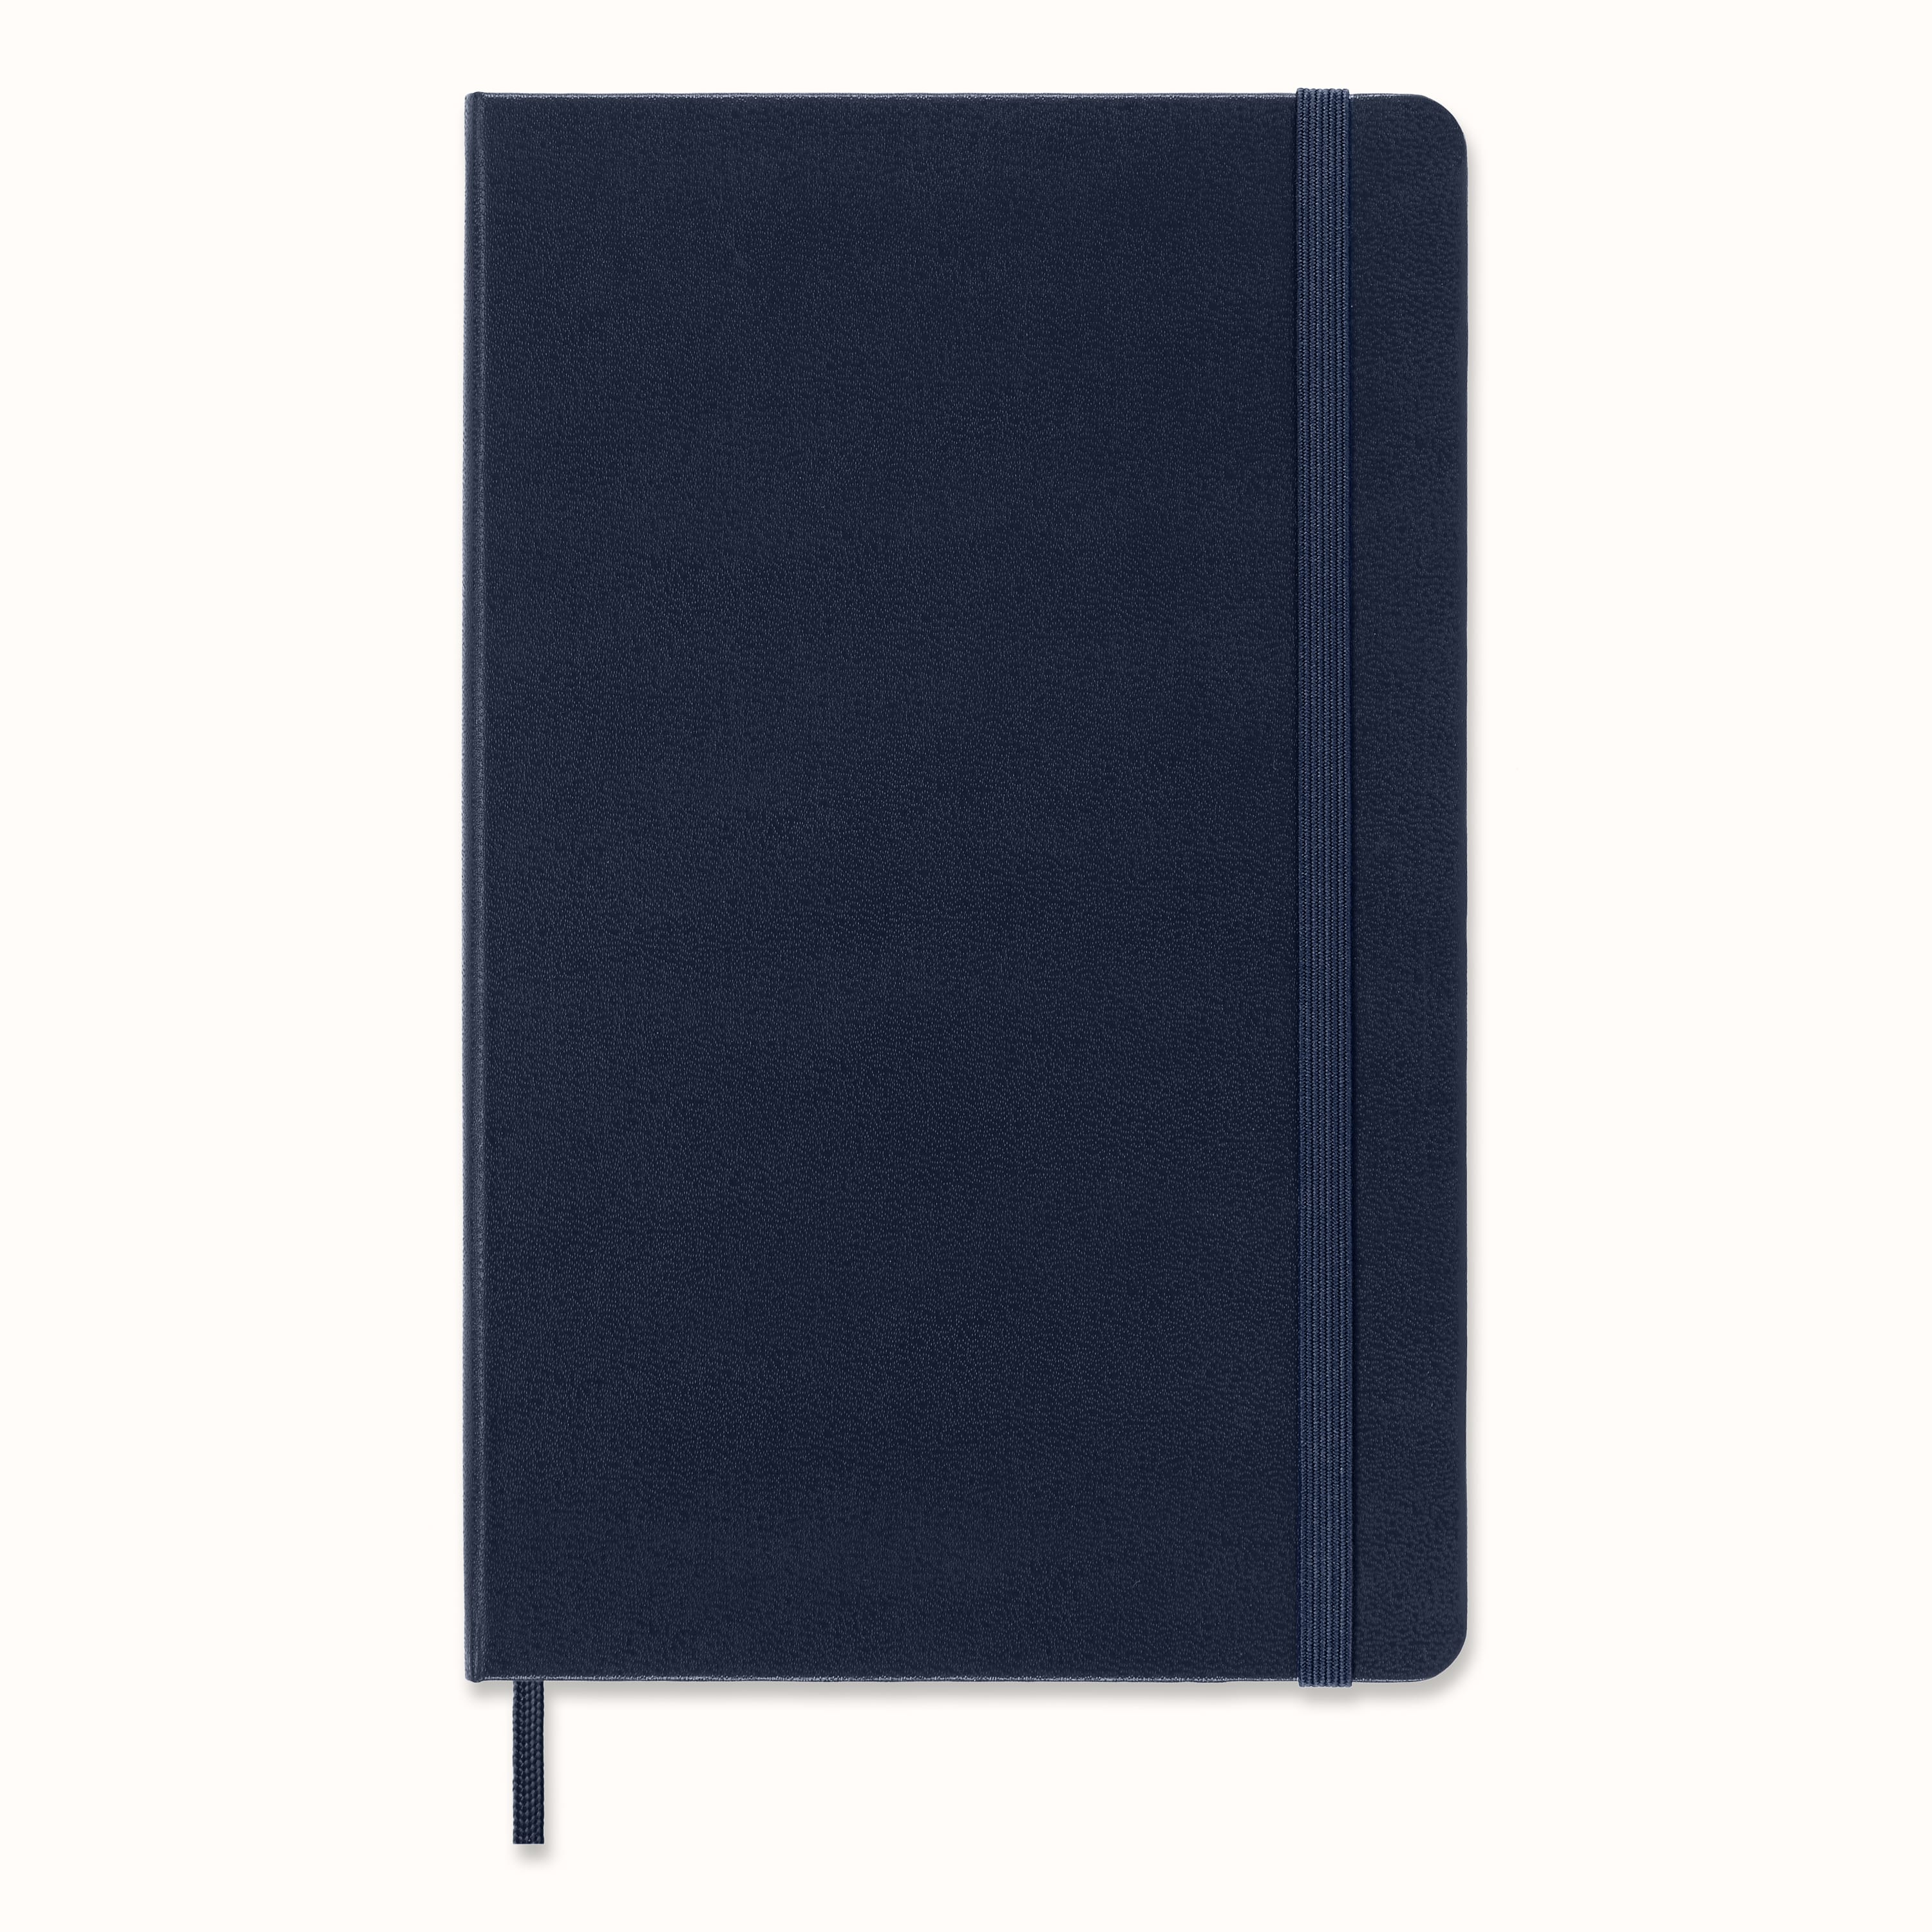 BLU Notebooks: The First Blueprint Paper Notebook